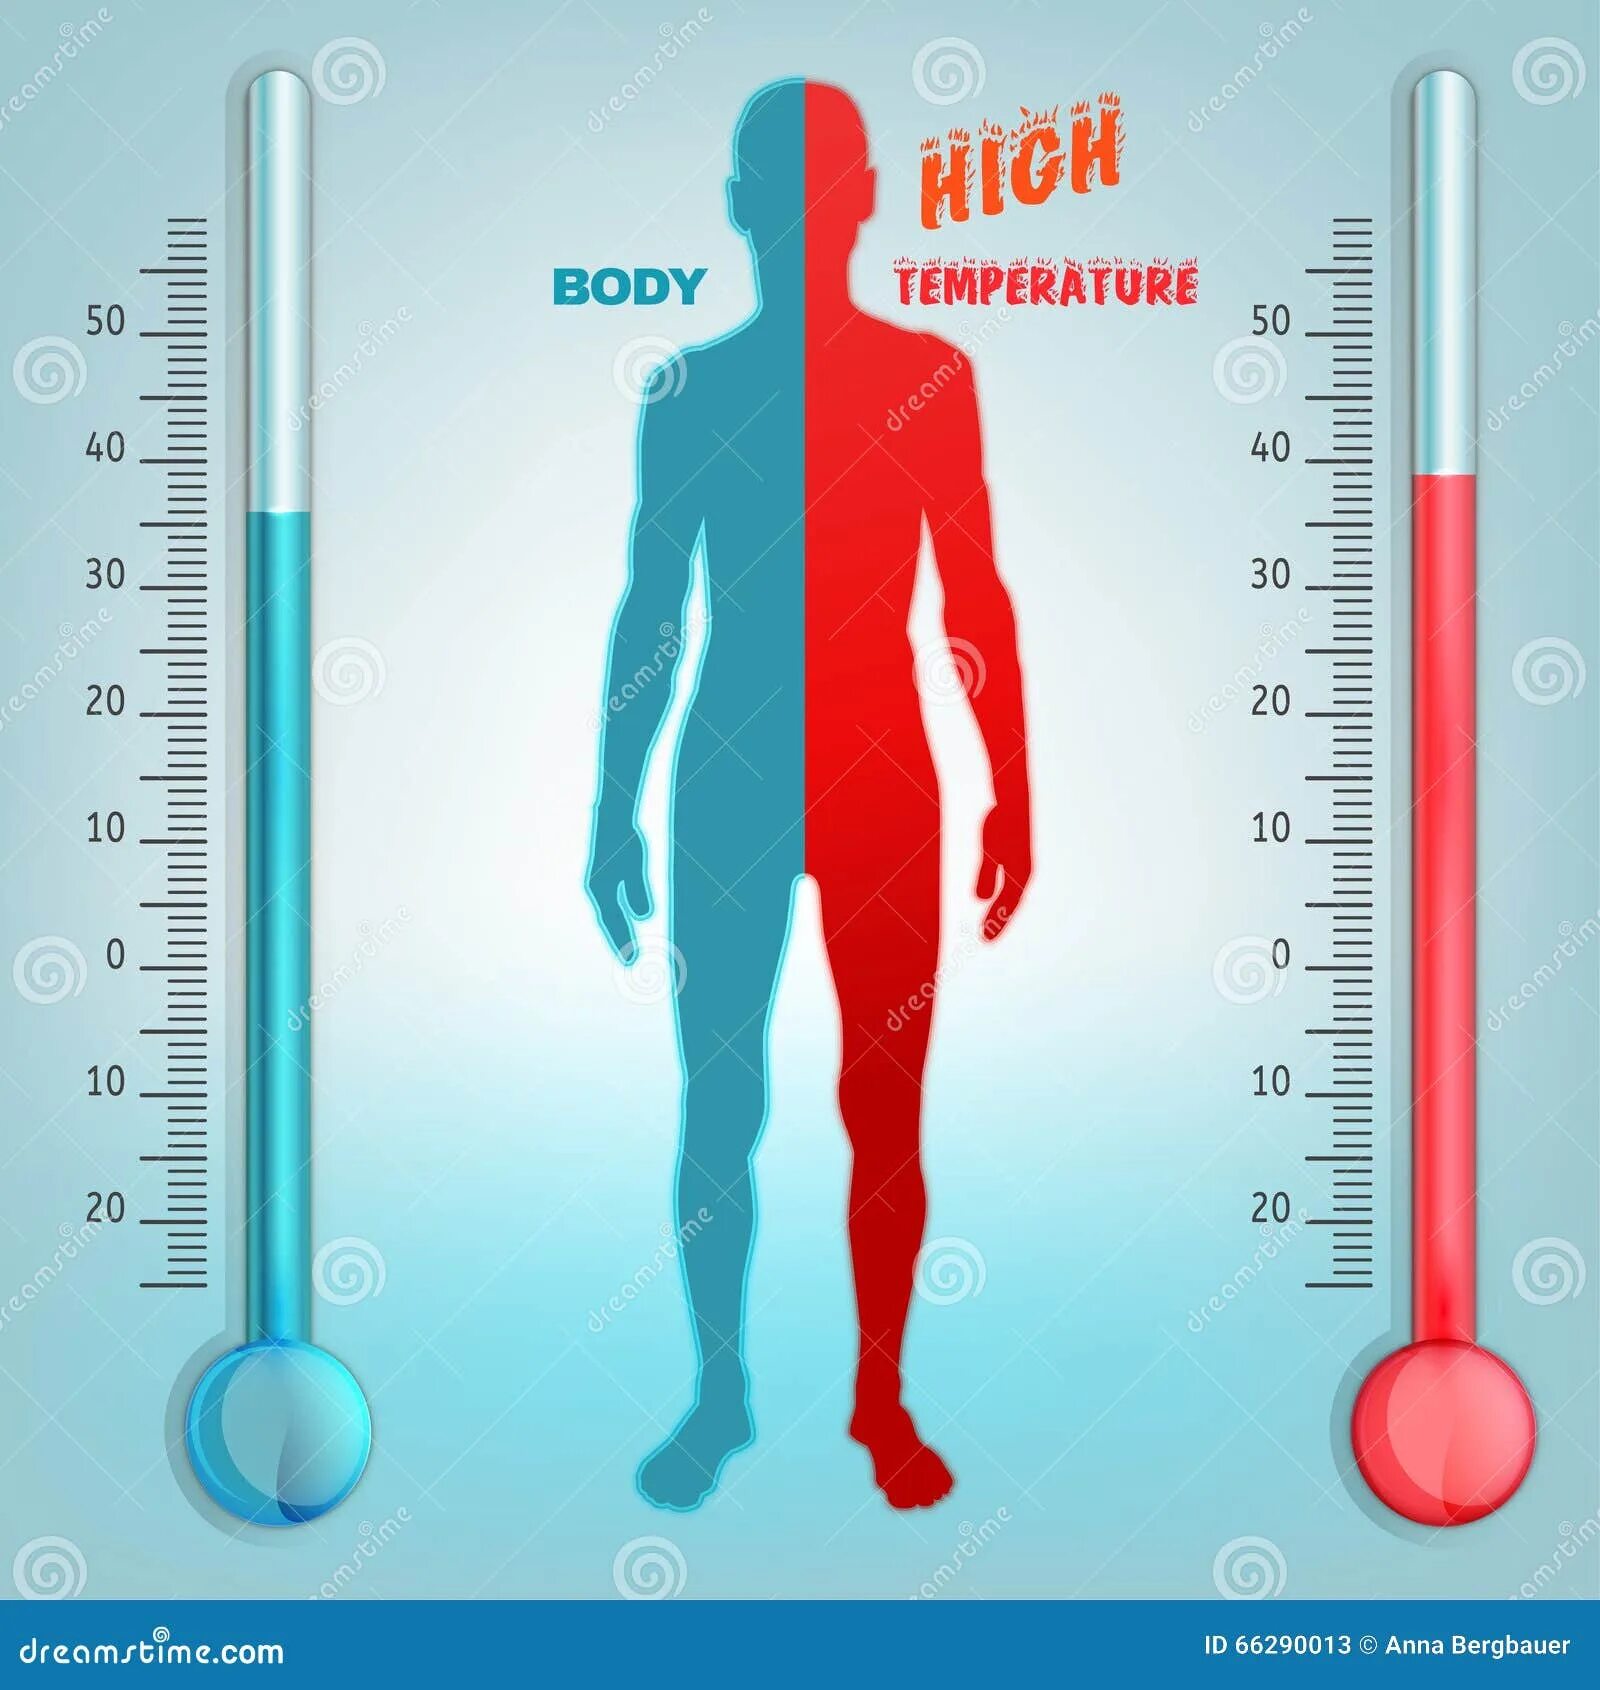 Температура тела в слизистых оболочках. Высокая температура тела. Воздействие высоких и низких температур. Высокая и низкая температура. Влияние температуры тела.